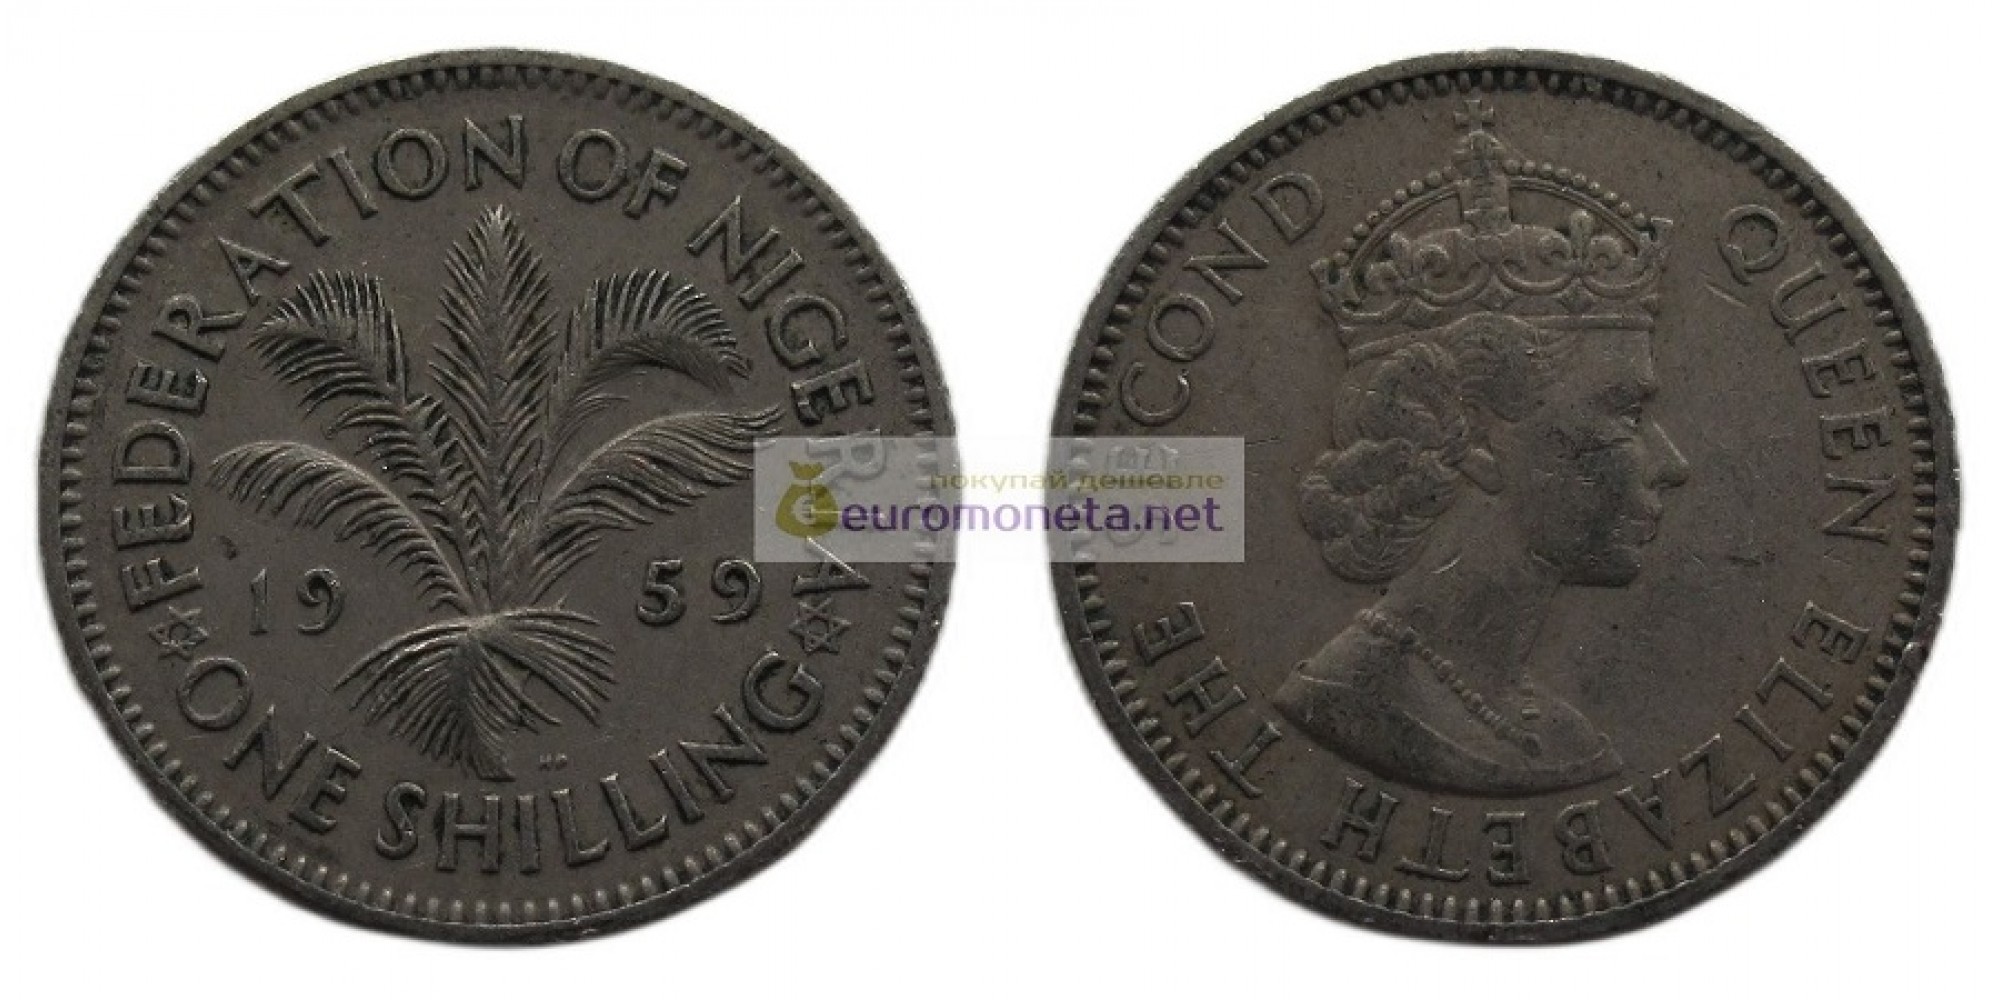 Нигерия 1 шиллинг 1959 год. Королева Елизавета II